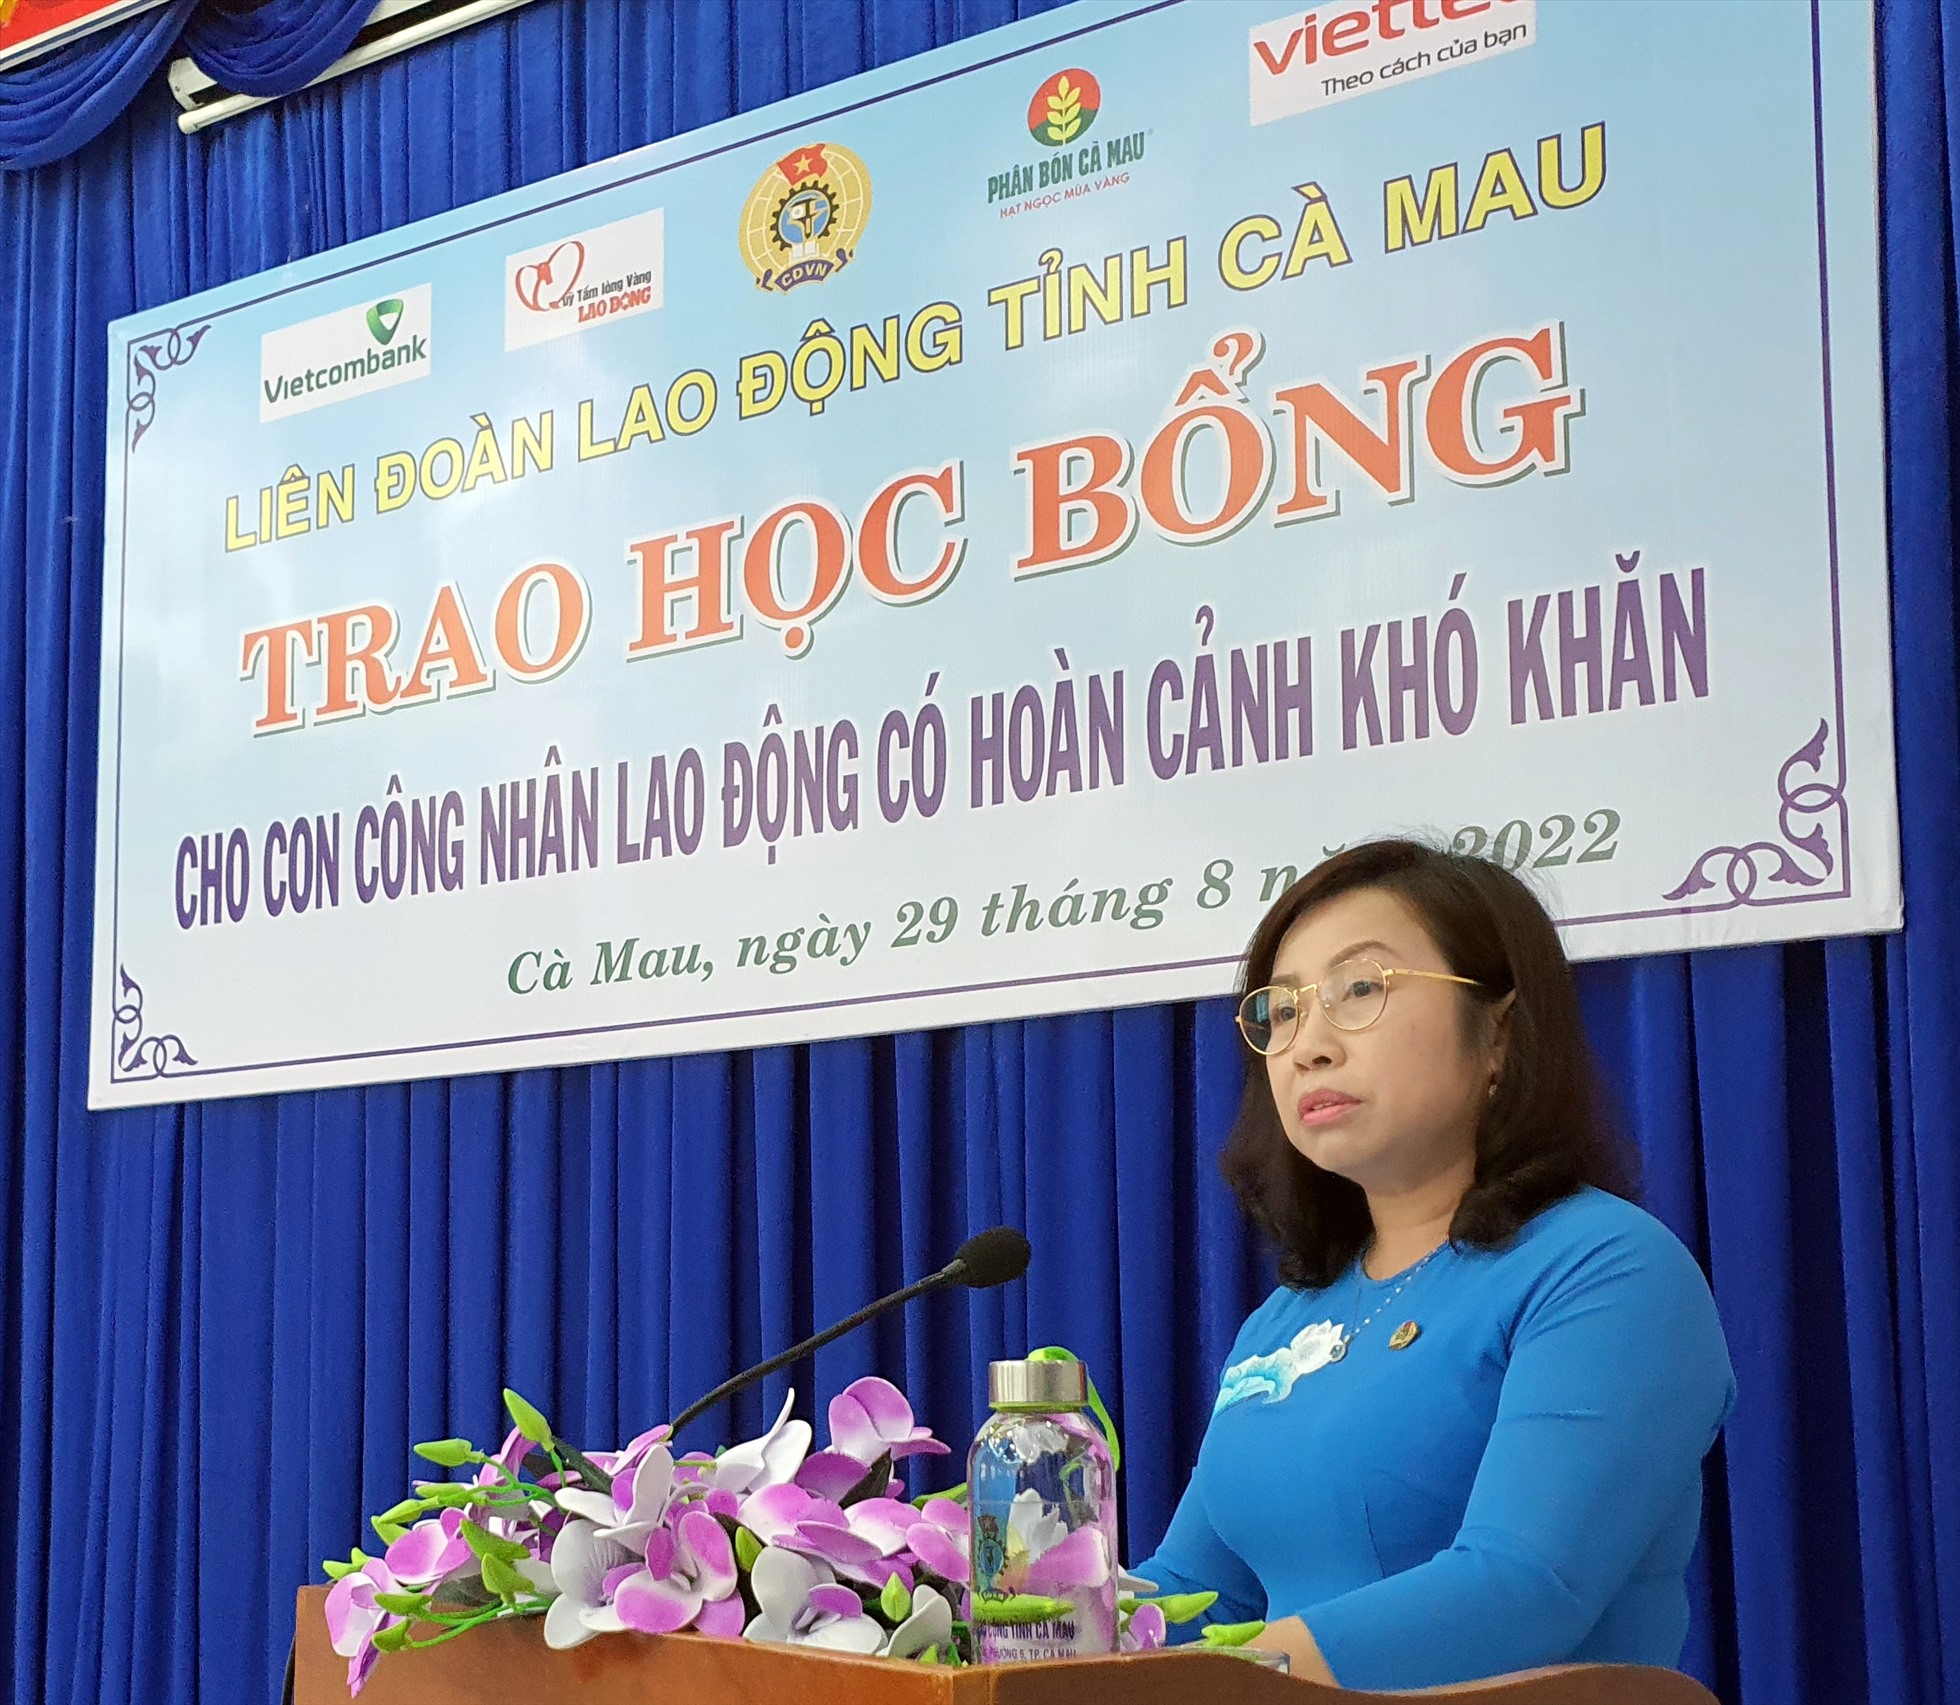 Phó chủ tịch Tổng LĐLĐ Việt Nam phát biểu tại buổi trao học bổng tại tỉnh Cà Mau. Ảnh: Nhật Hồ